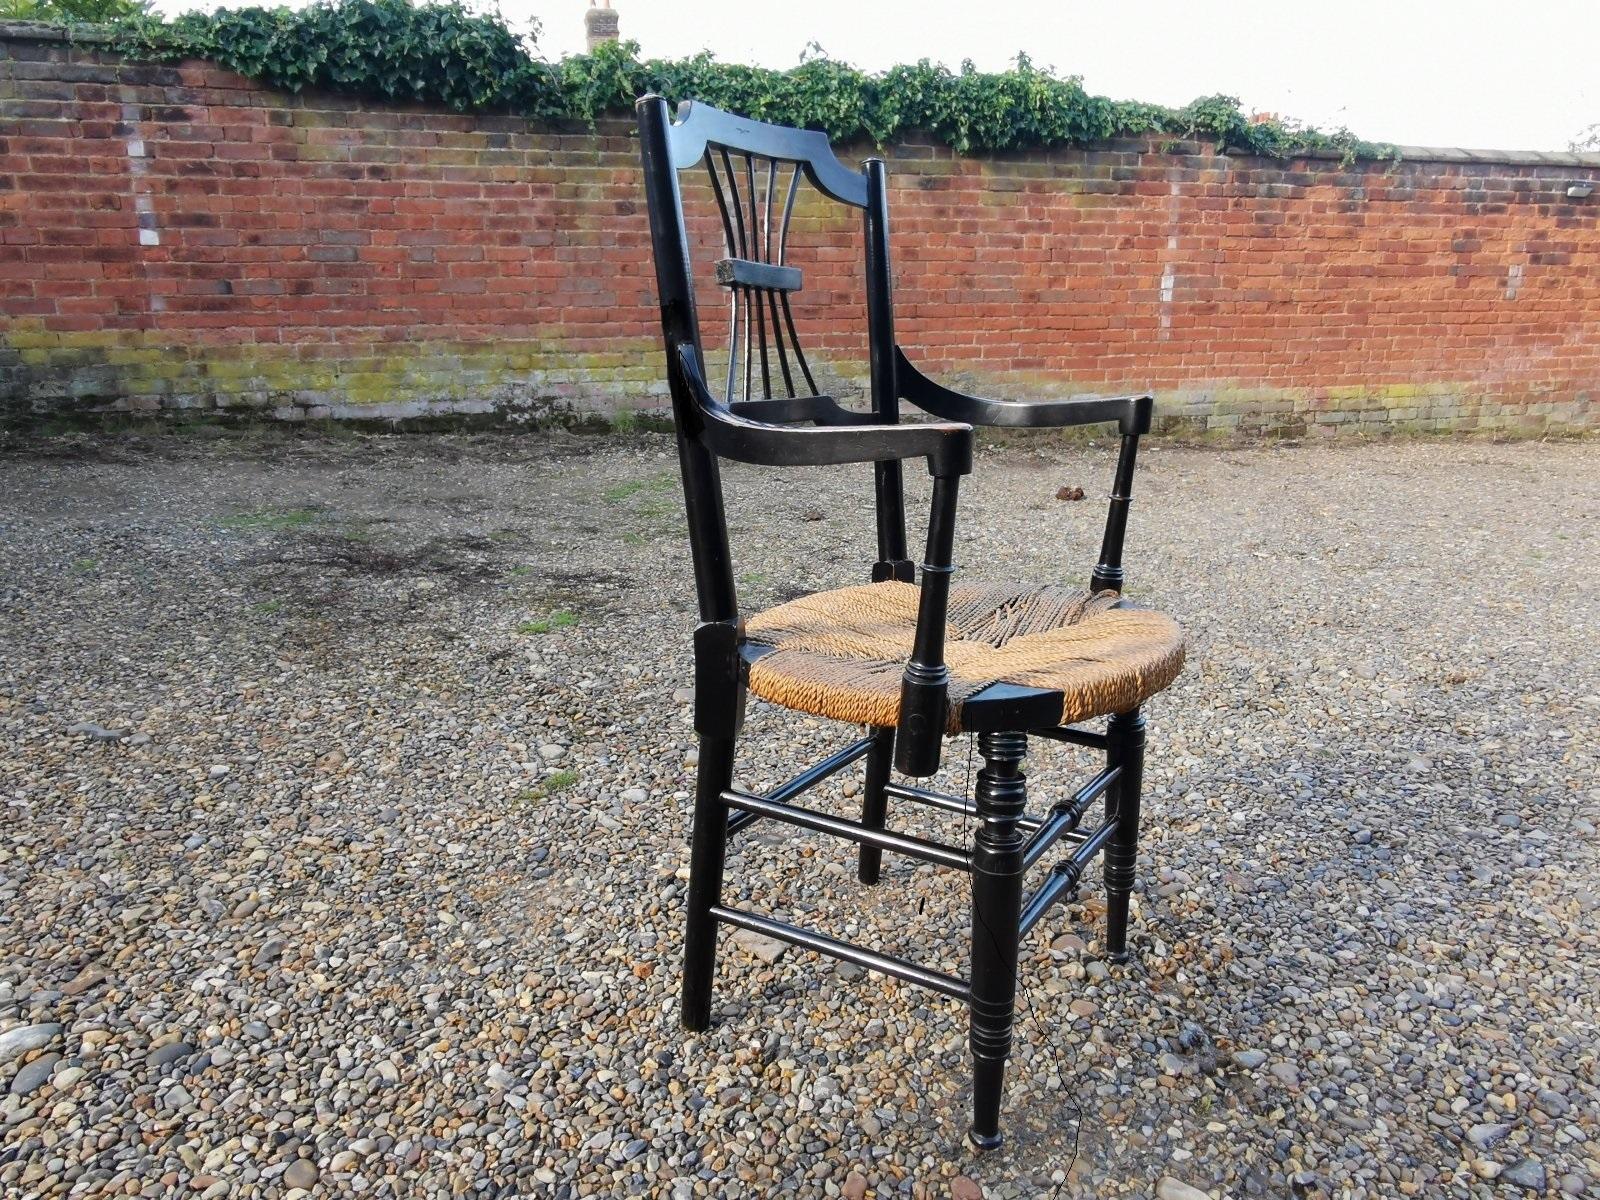 Liberty & Co. Im Stil der Sussex-Reihe von Morris and Co.
Ein ebonisierter Sessel im Sussex-Stil nach einem Entwurf von Daniel Gabriel Rossetti im Originalzustand mit originalem Sitz aus Seegras und Messingknöpfen, die das Seegras unterhalb der